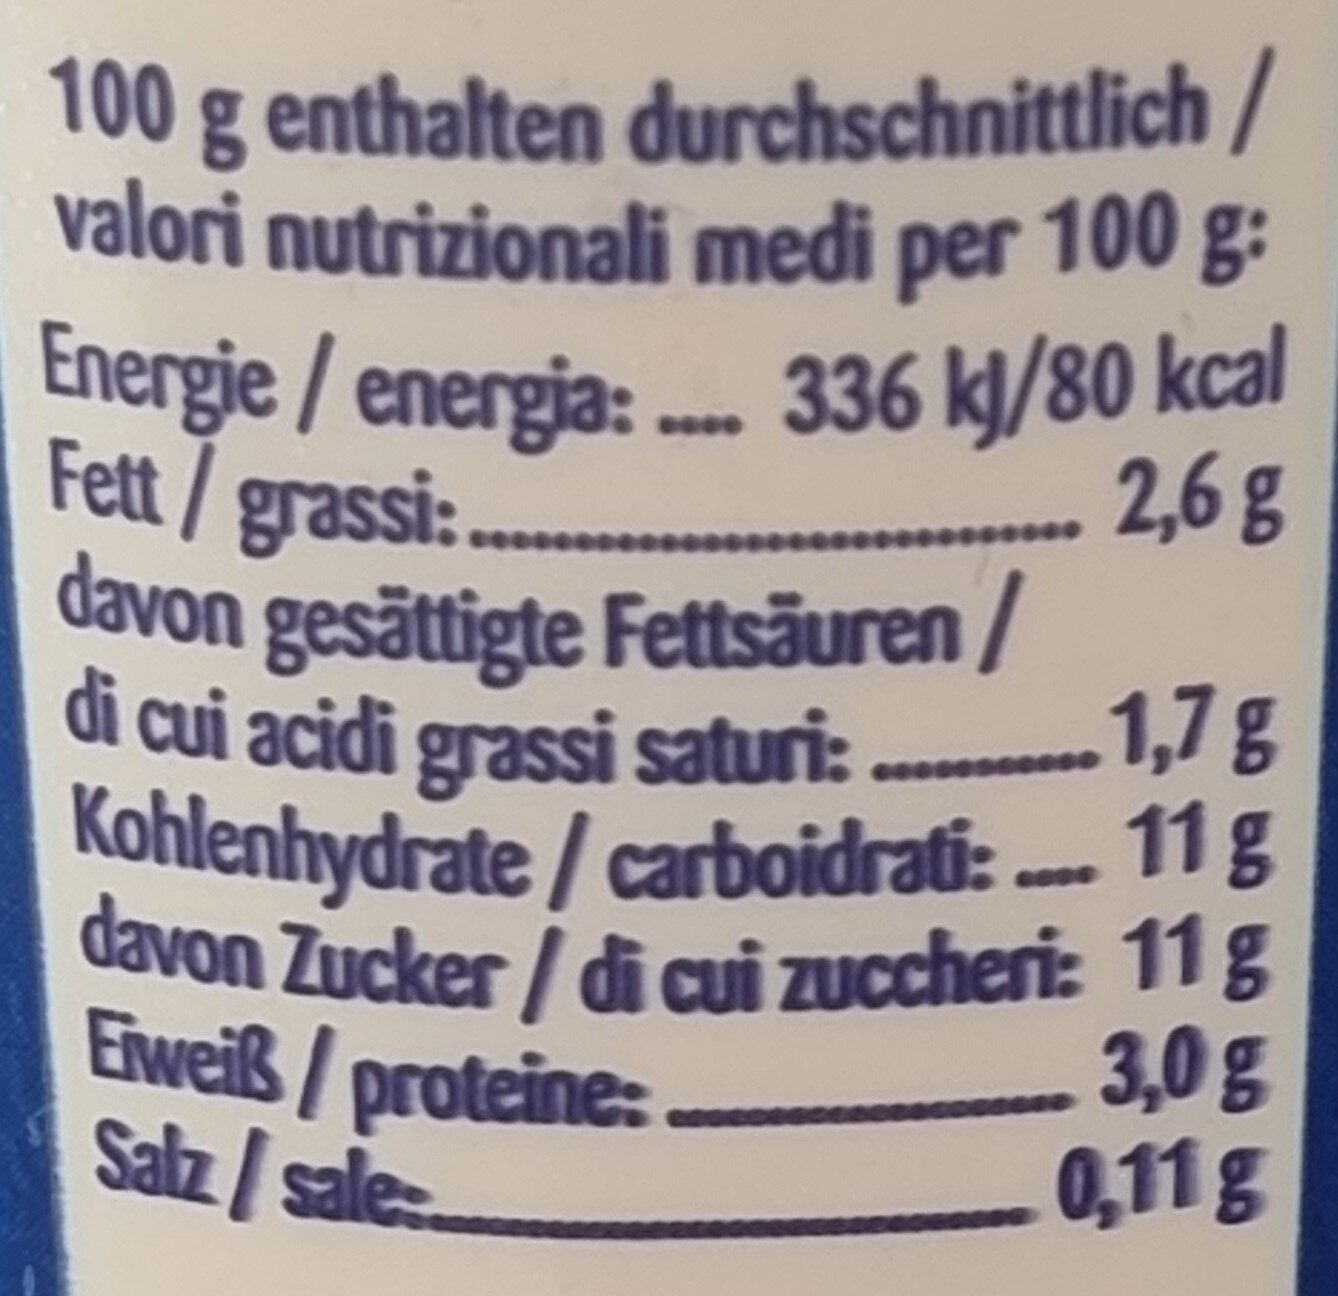 Bergbauern-Joghurt Erdbeer - Nutrition facts - de